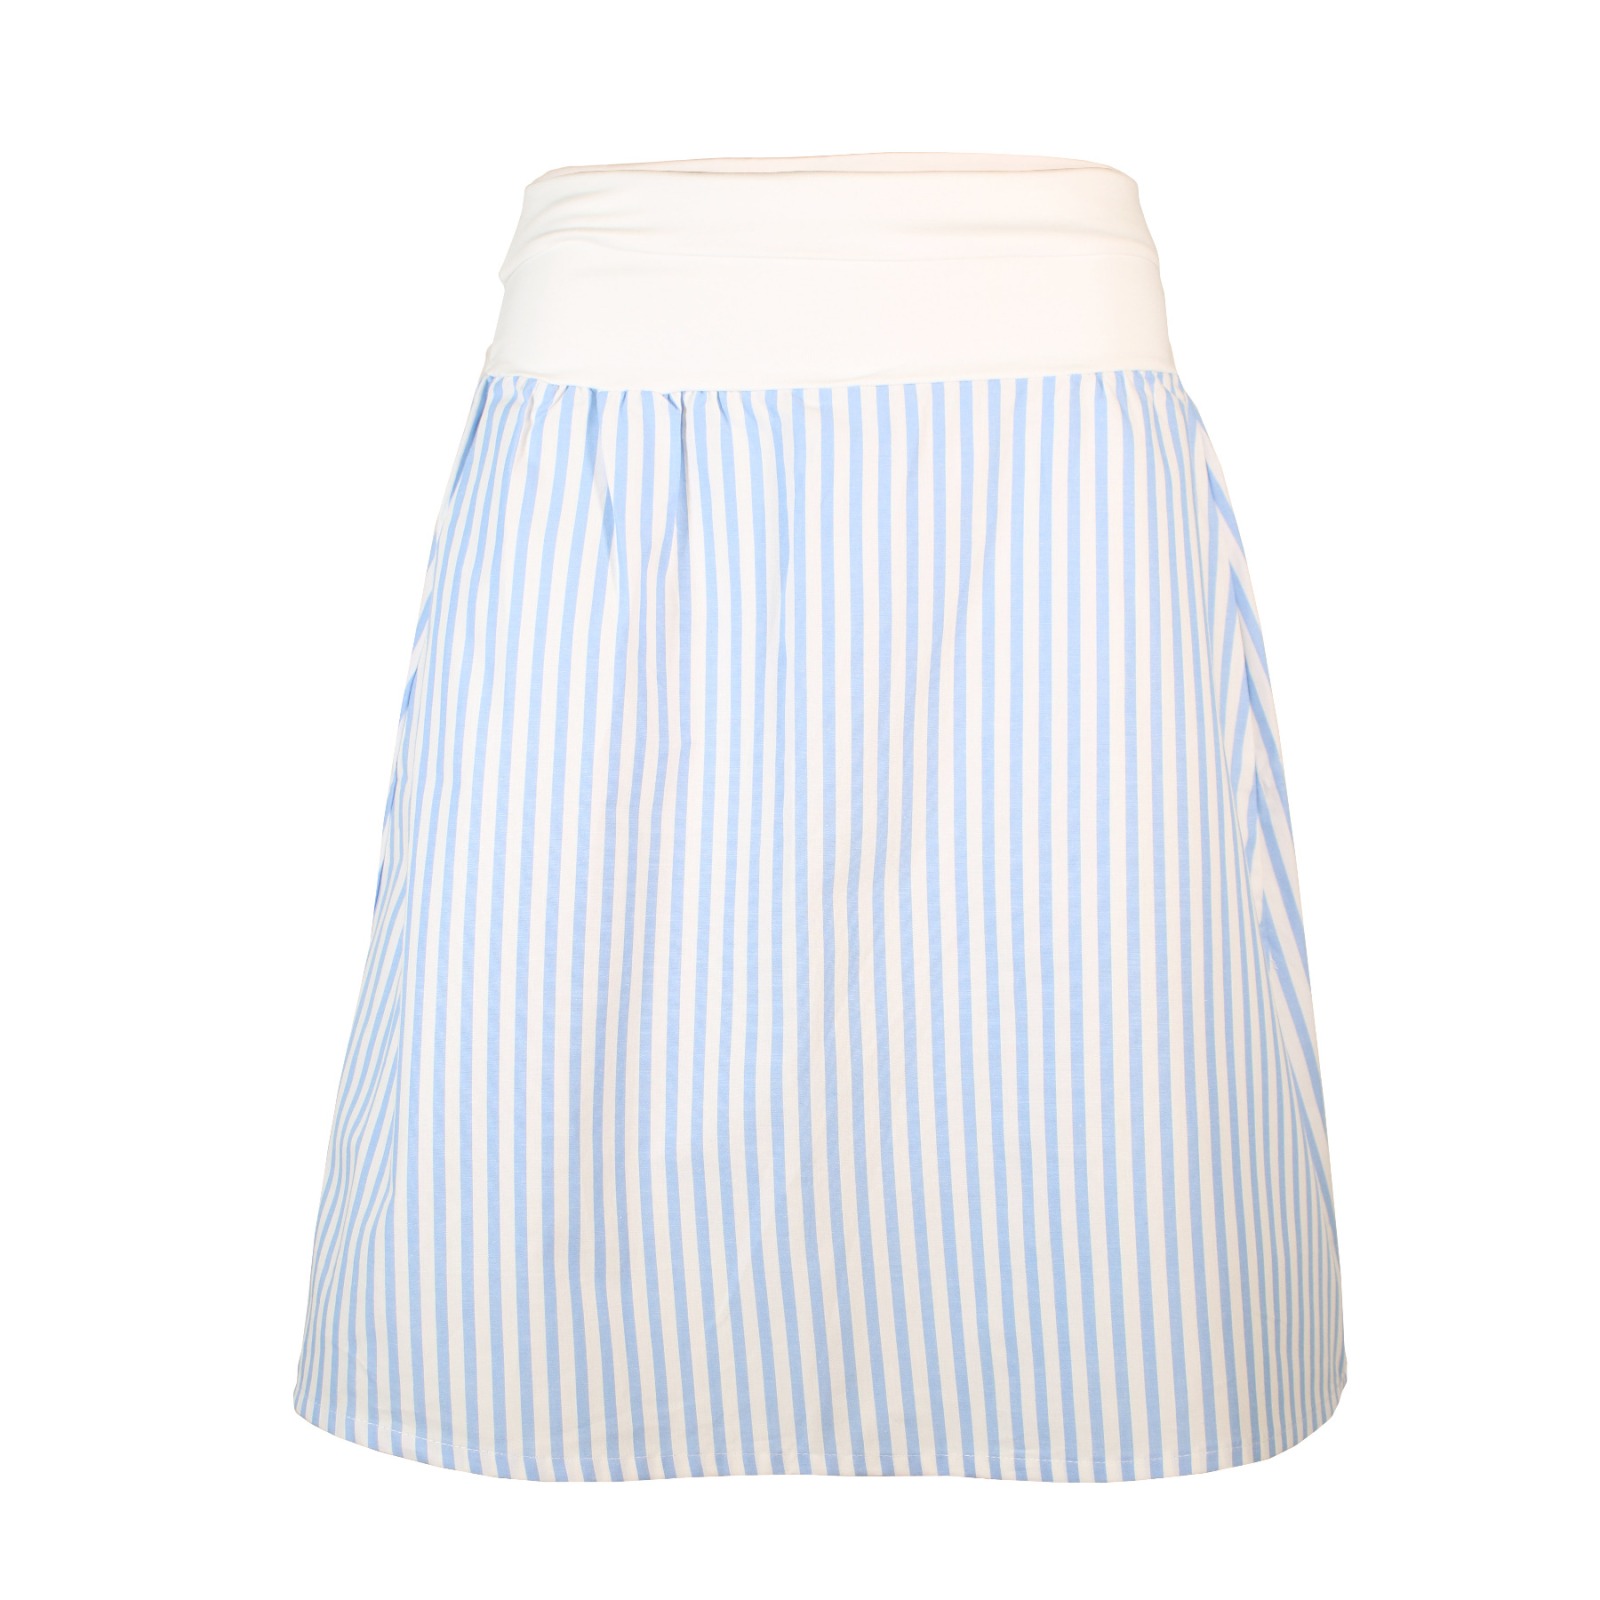 Organic skirt Freudian, summer stripes blue / white